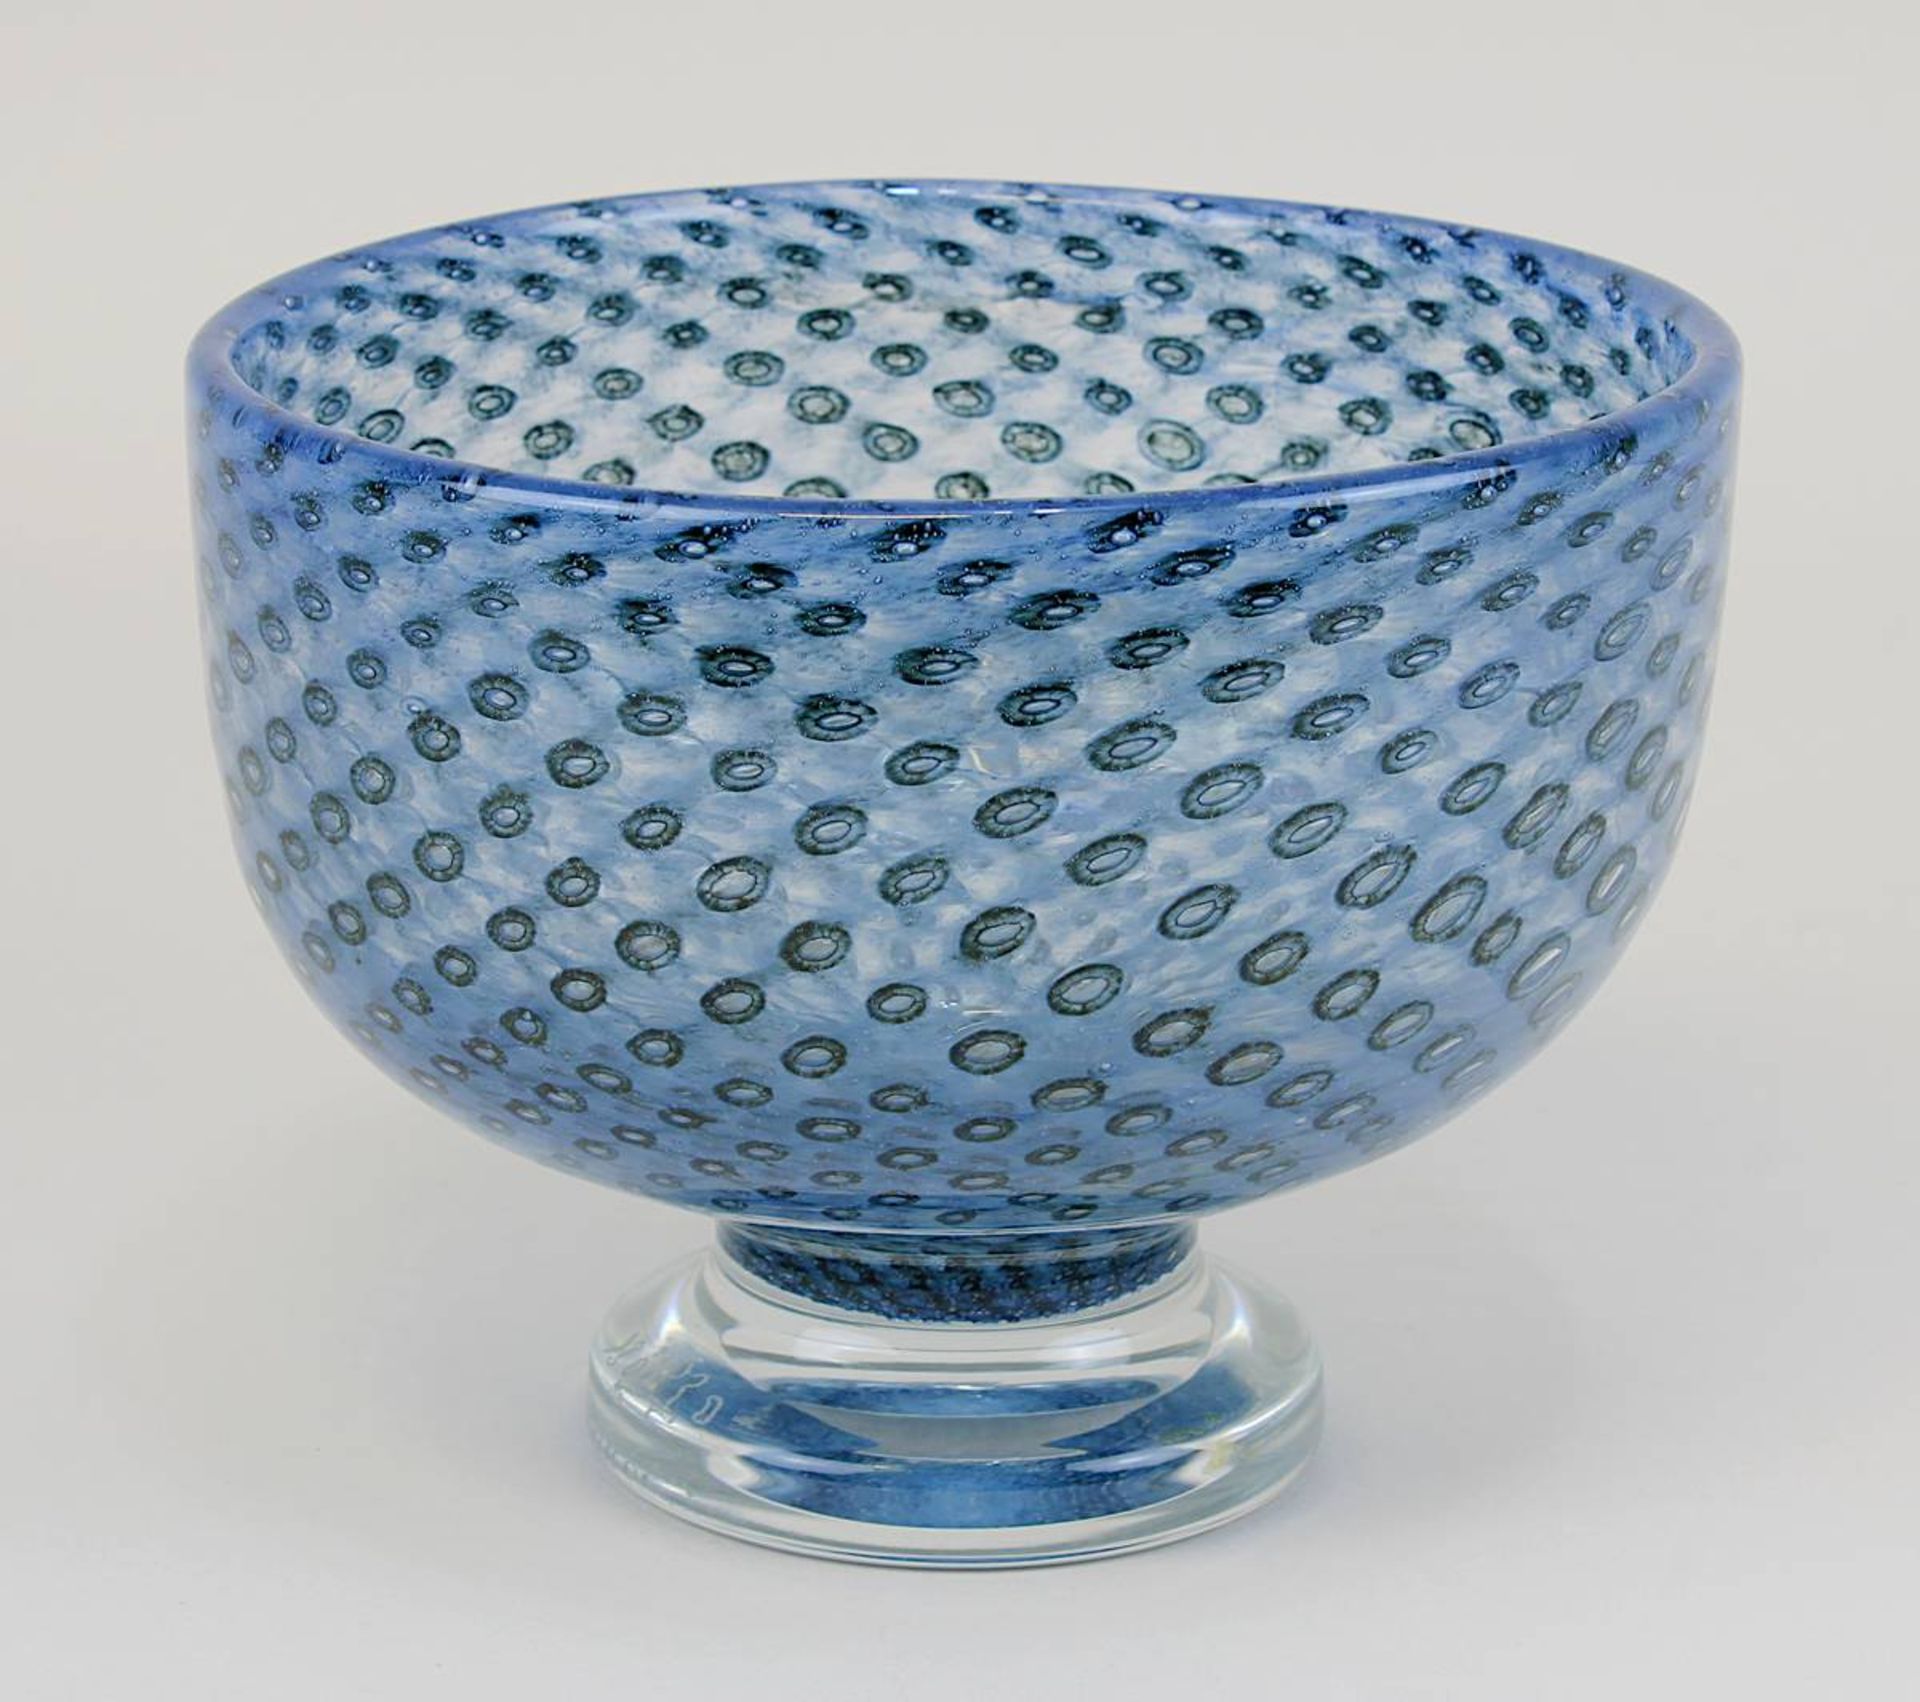 Boda Glasschale, Entwurf Bertil Vallien um 1970, Klarglas, innen mit eingestochenen Luftblasen und